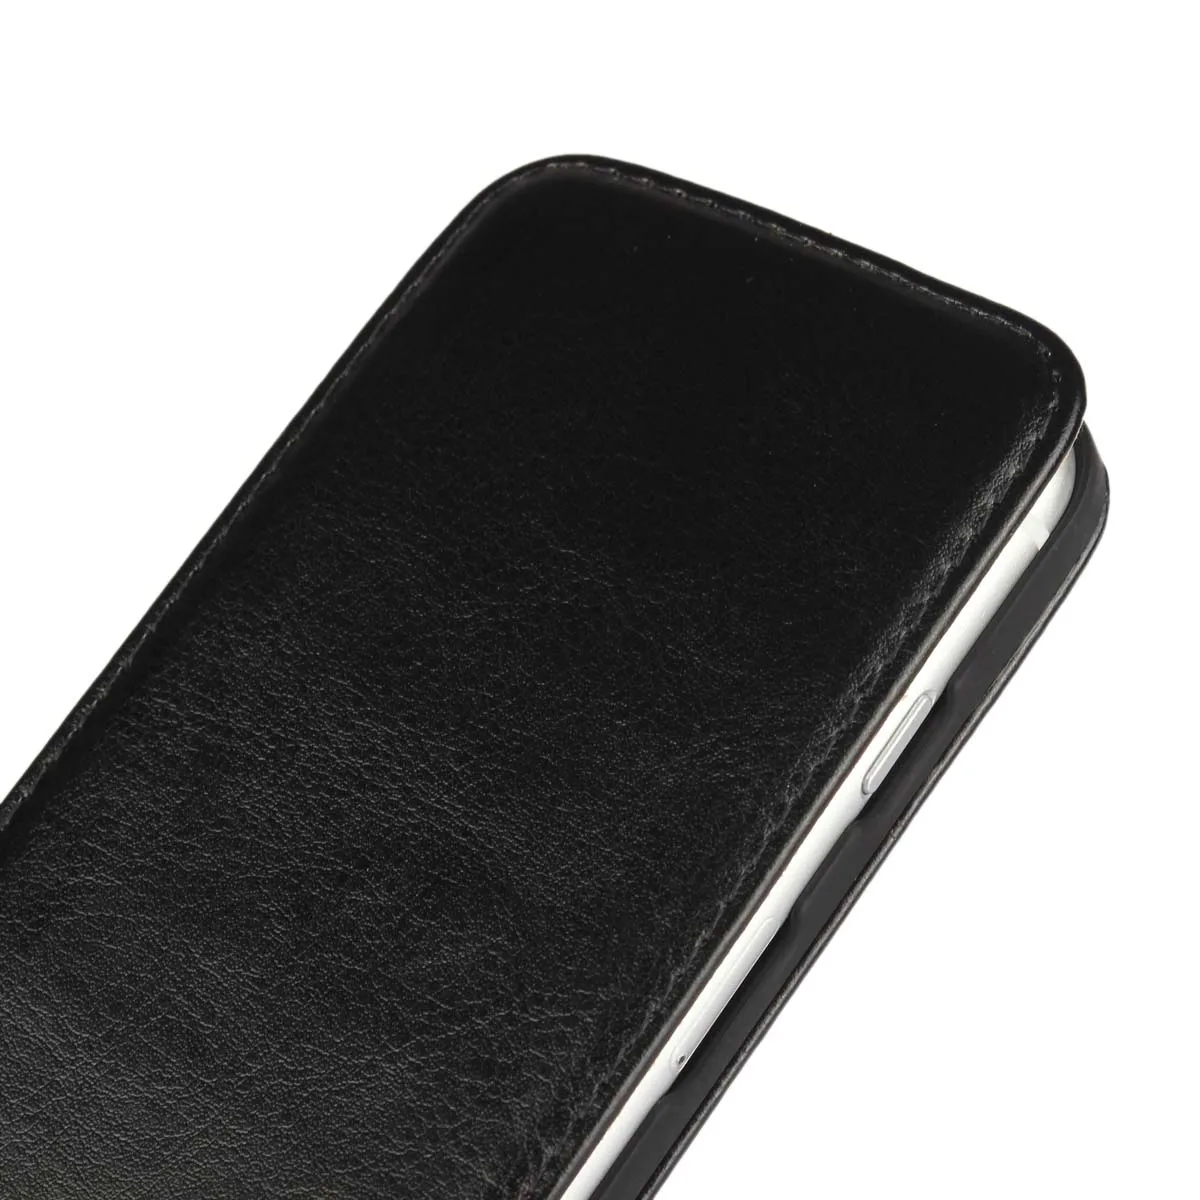 Роскошный чехол-книжка из искусственной кожи чехол-книжка для телефона Вертикальный флип-чехол для iPhone 5G 5S SE 5C 4S 7 8 Plus 6G 6S Plus